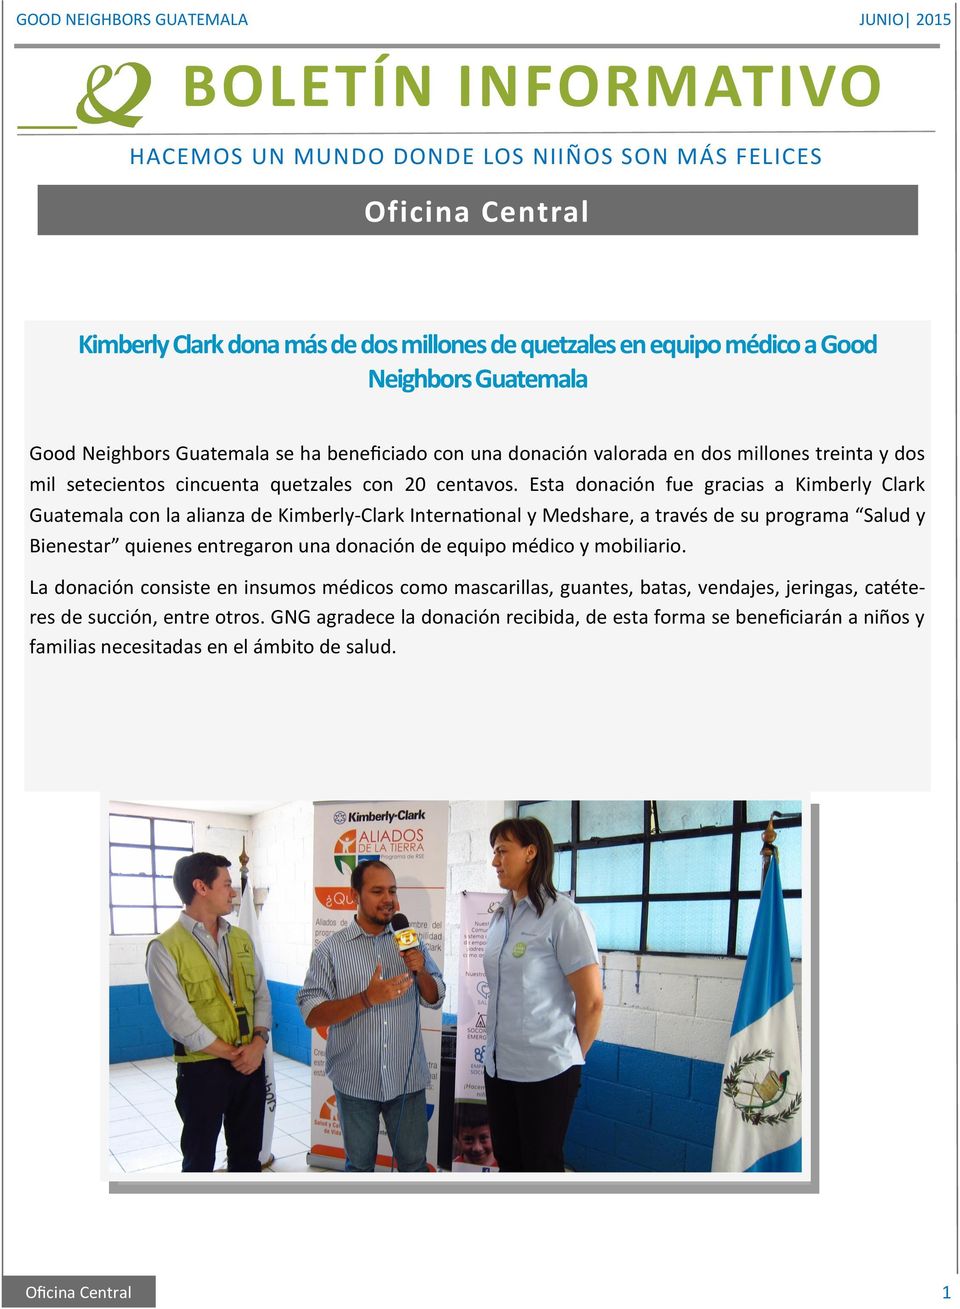 Esta donación fue gracias a Kimberly Clark Guatemala con la alianza de Kimberly-Clark International y Medshare, a través de su programa Salud y Bienestar quienes entregaron una donación de equipo